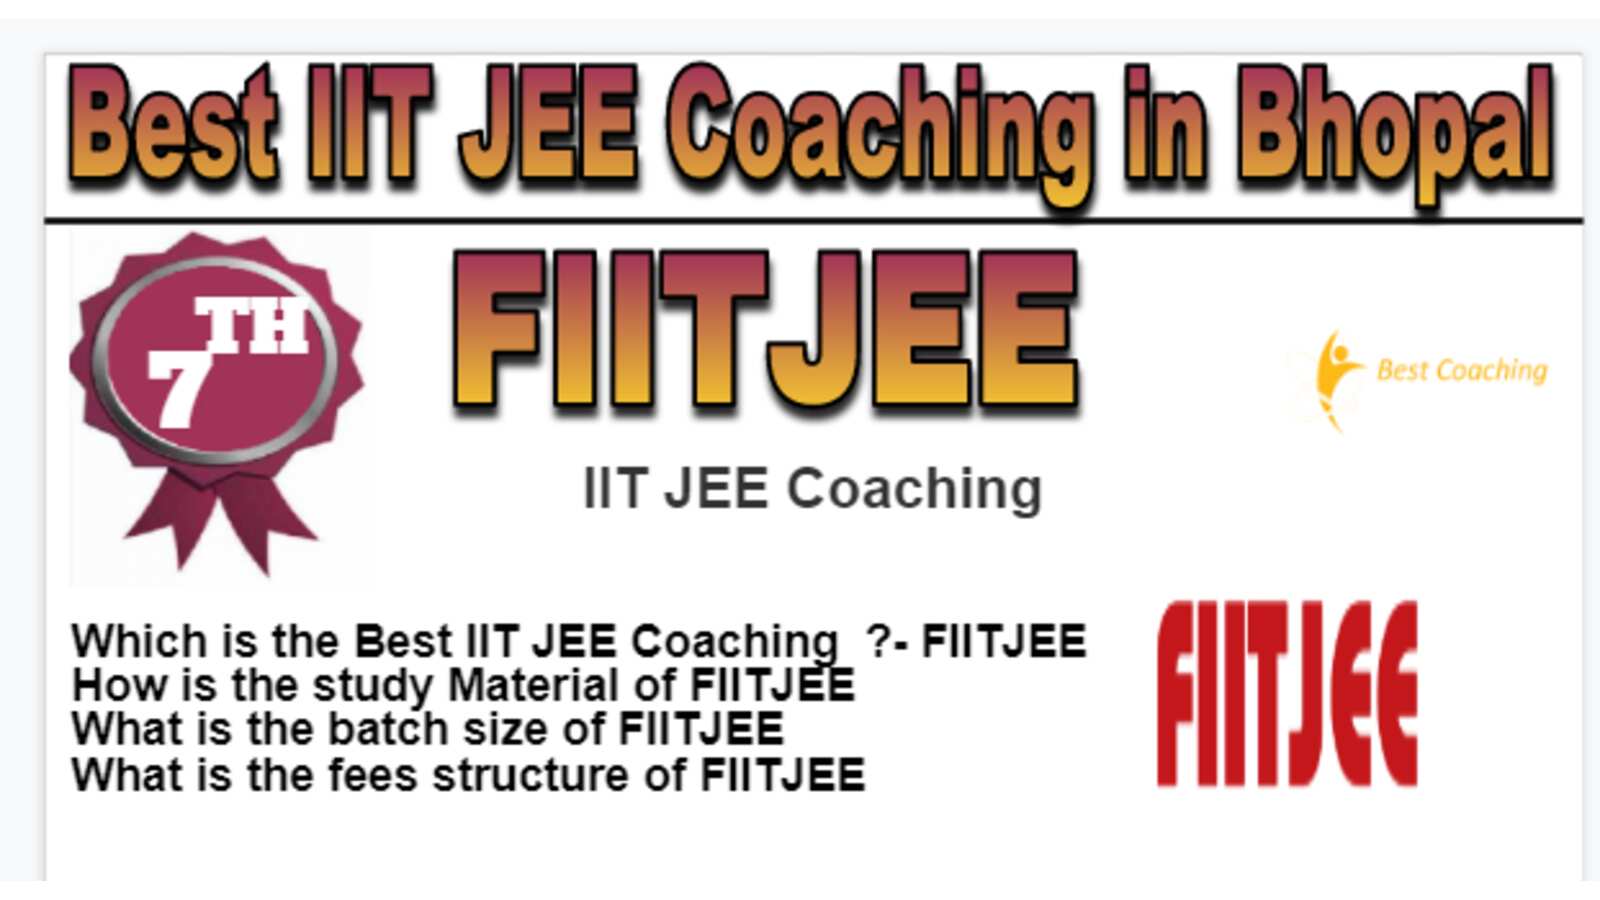 Rank 7 Best IIT JEE Coaching in Bhopal